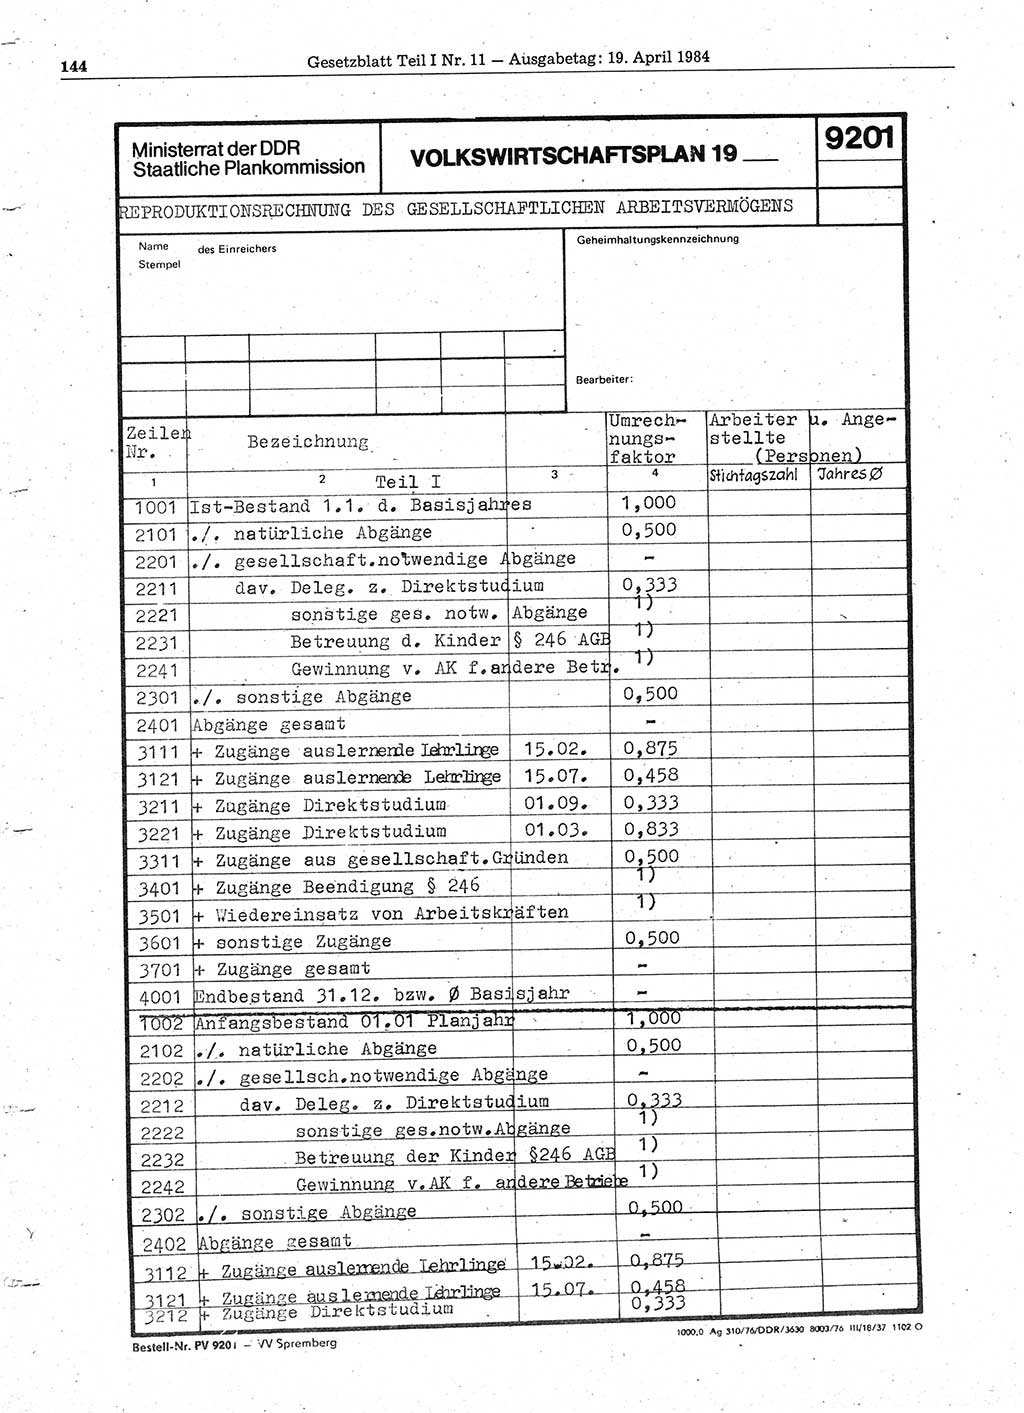 Gesetzblatt (GBl.) der Deutschen Demokratischen Republik (DDR) Teil Ⅰ 1984, Seite 144 (GBl. DDR Ⅰ 1984, S. 144)